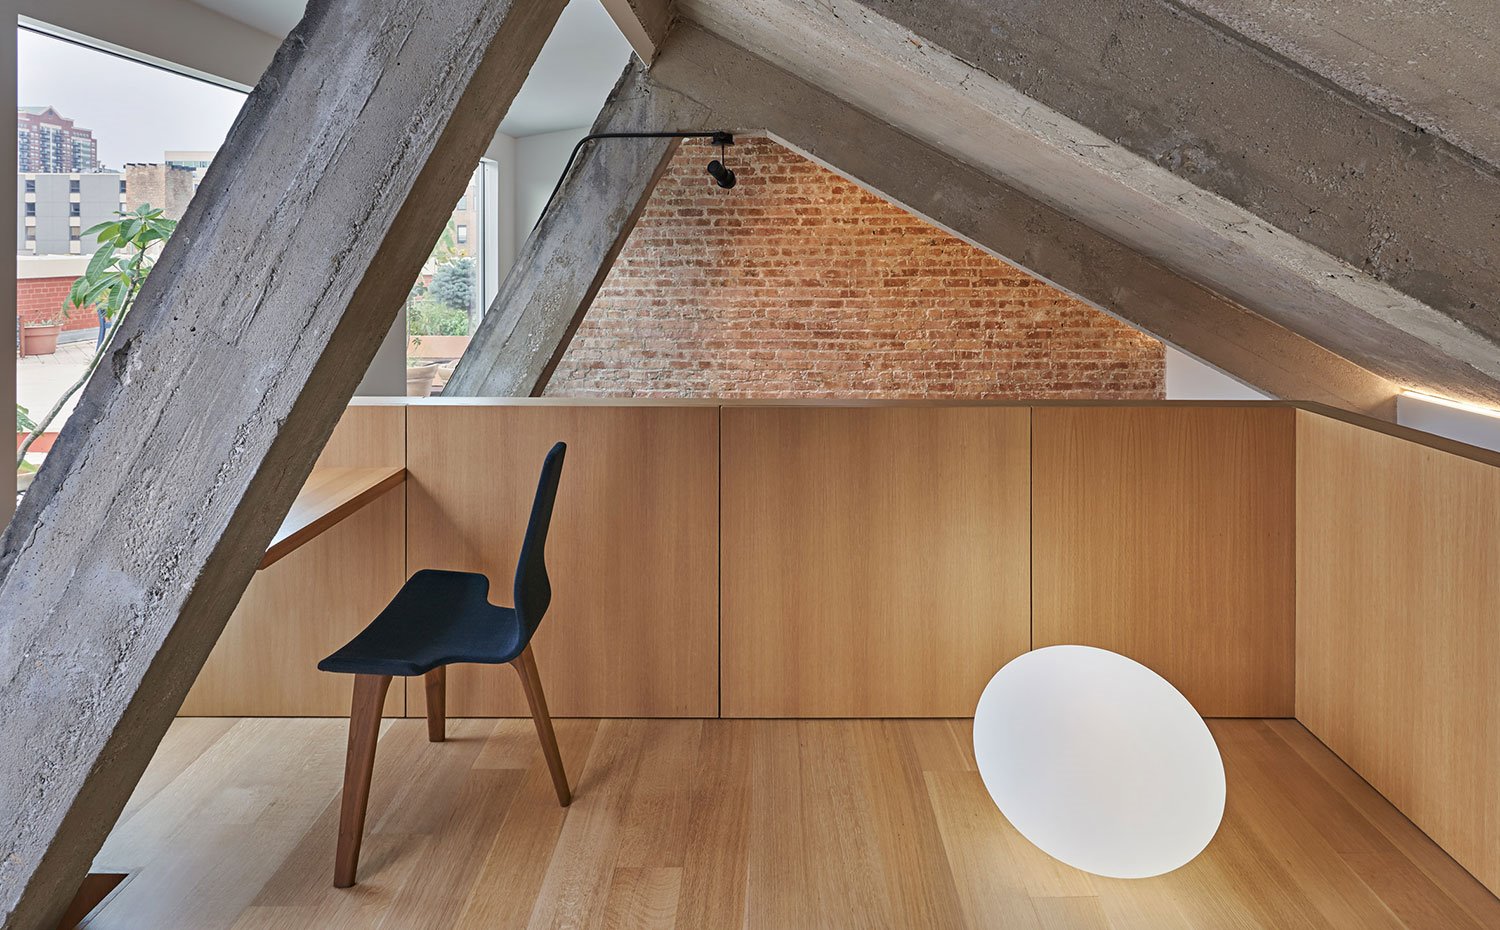 Altillo con suelo de madera, estructura y vigas en hormigón, pared en ladrillo visto, silla de madera en negro, mesa de madera a medida, iluminación suelo con forma circular